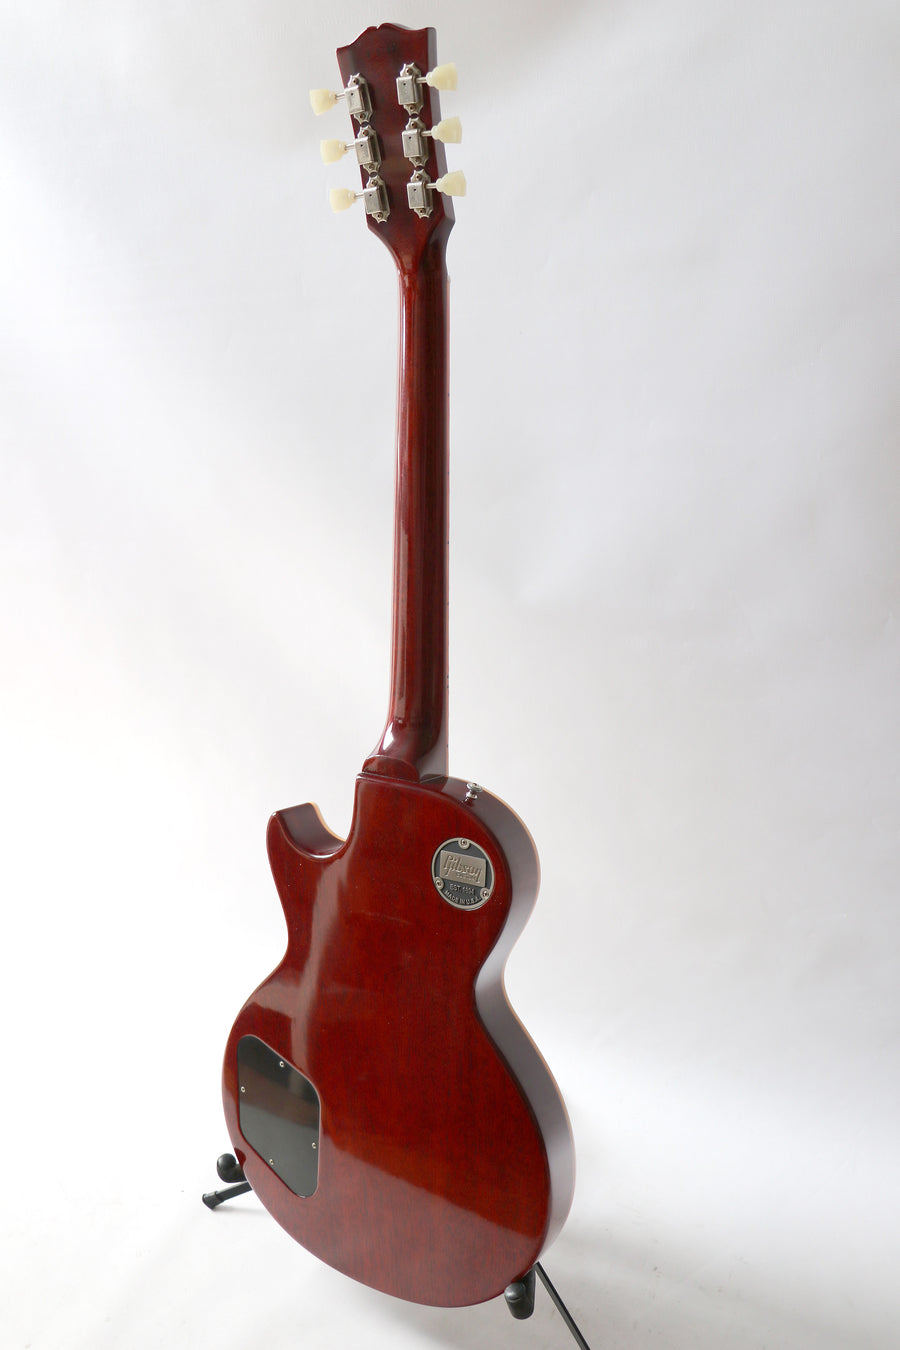 Gibson Custom 1959 Les Paul Standard Historic Reissue 2020